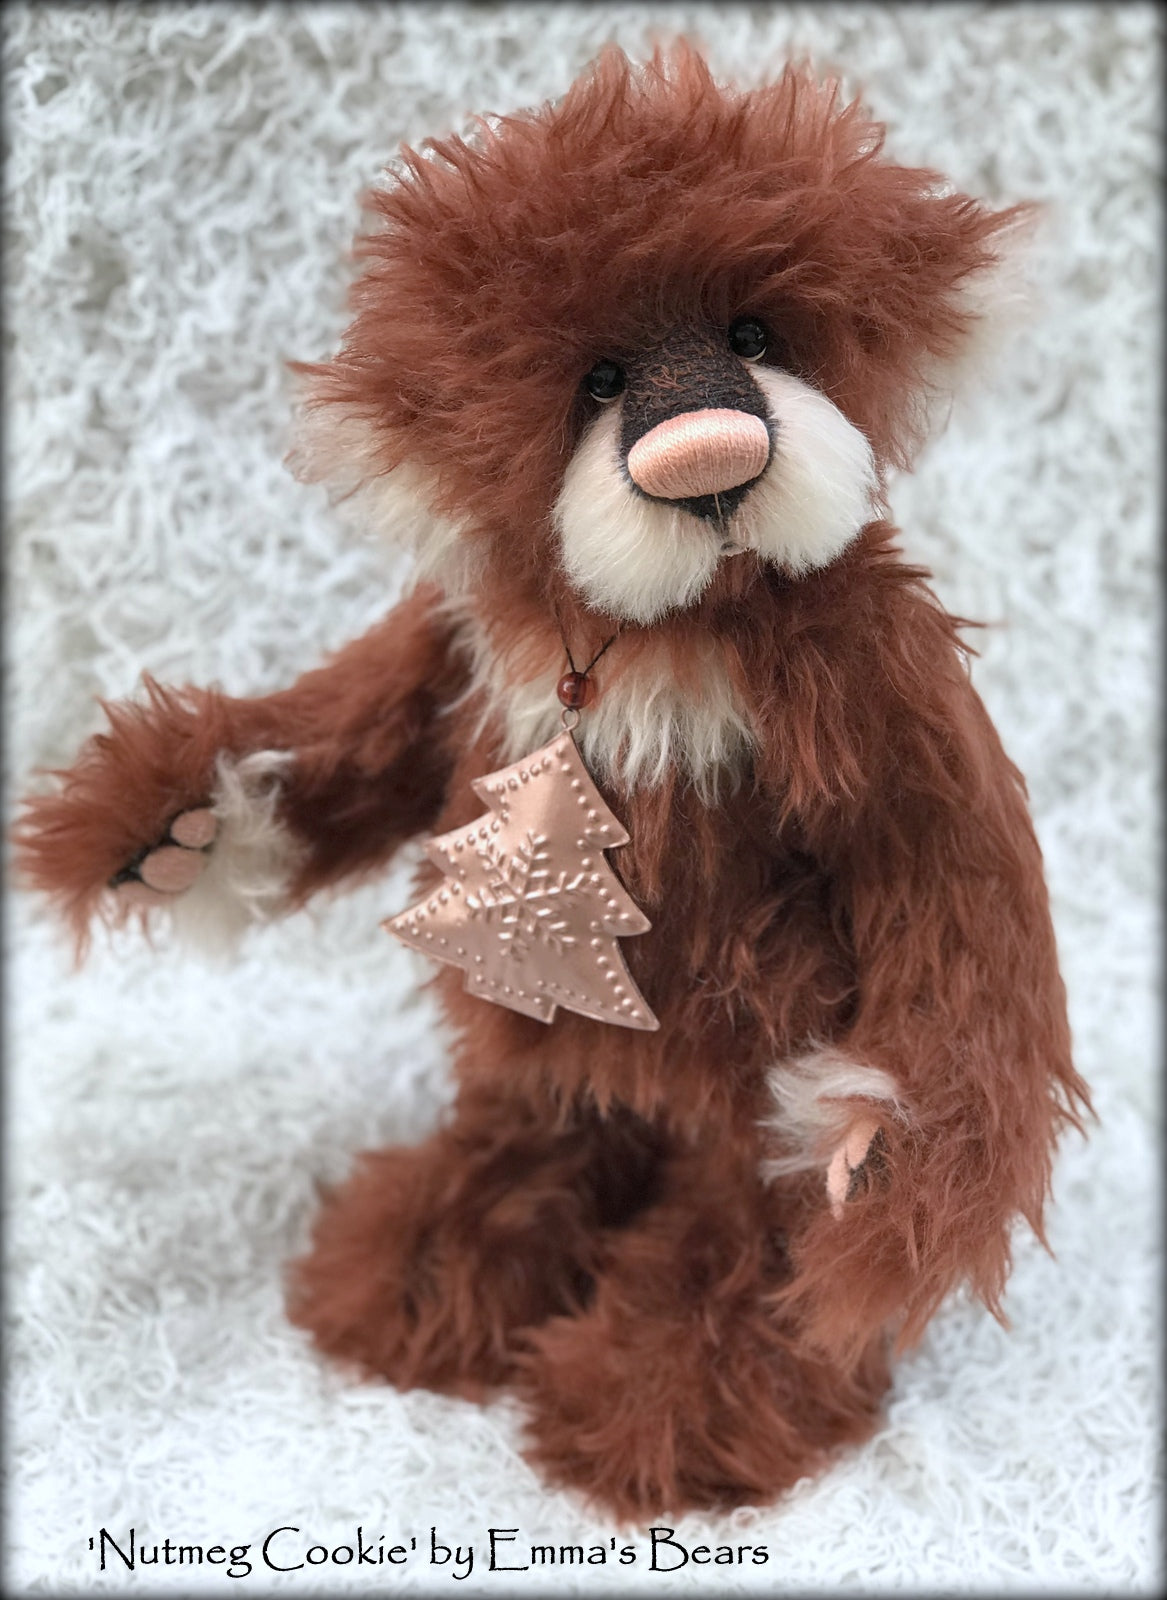 Nutmeg Cookie - 15in MOHAIR Christmas Artist Bear by Emmas Bears - OOAK